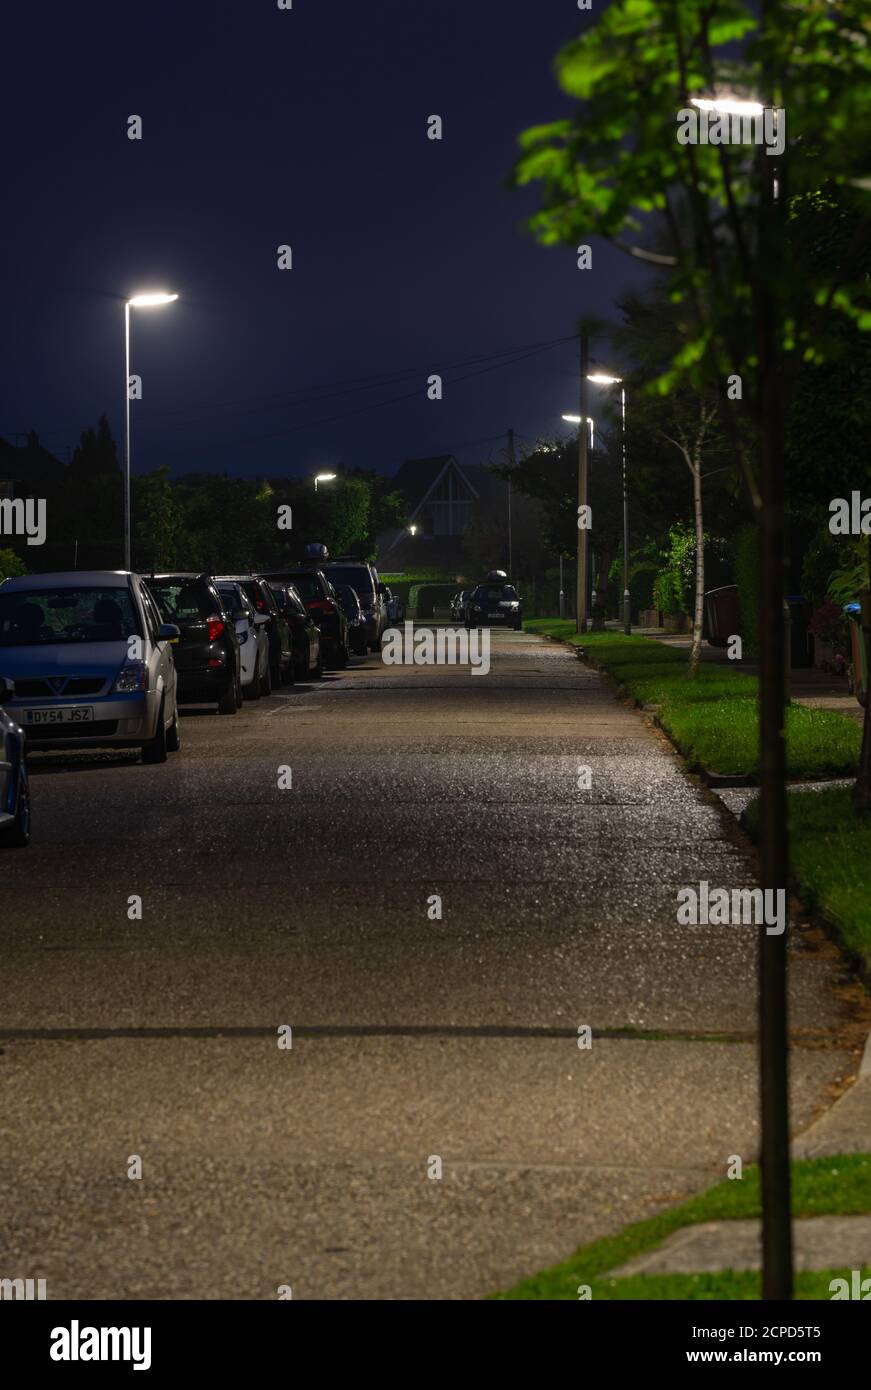 Straßenlaternen auf einer Straße, auf der die Laternenpfosten in einer ruhigen Wohnstraße in West Sussex, England, Großbritannien, eingeschaltet sind. Stockfoto